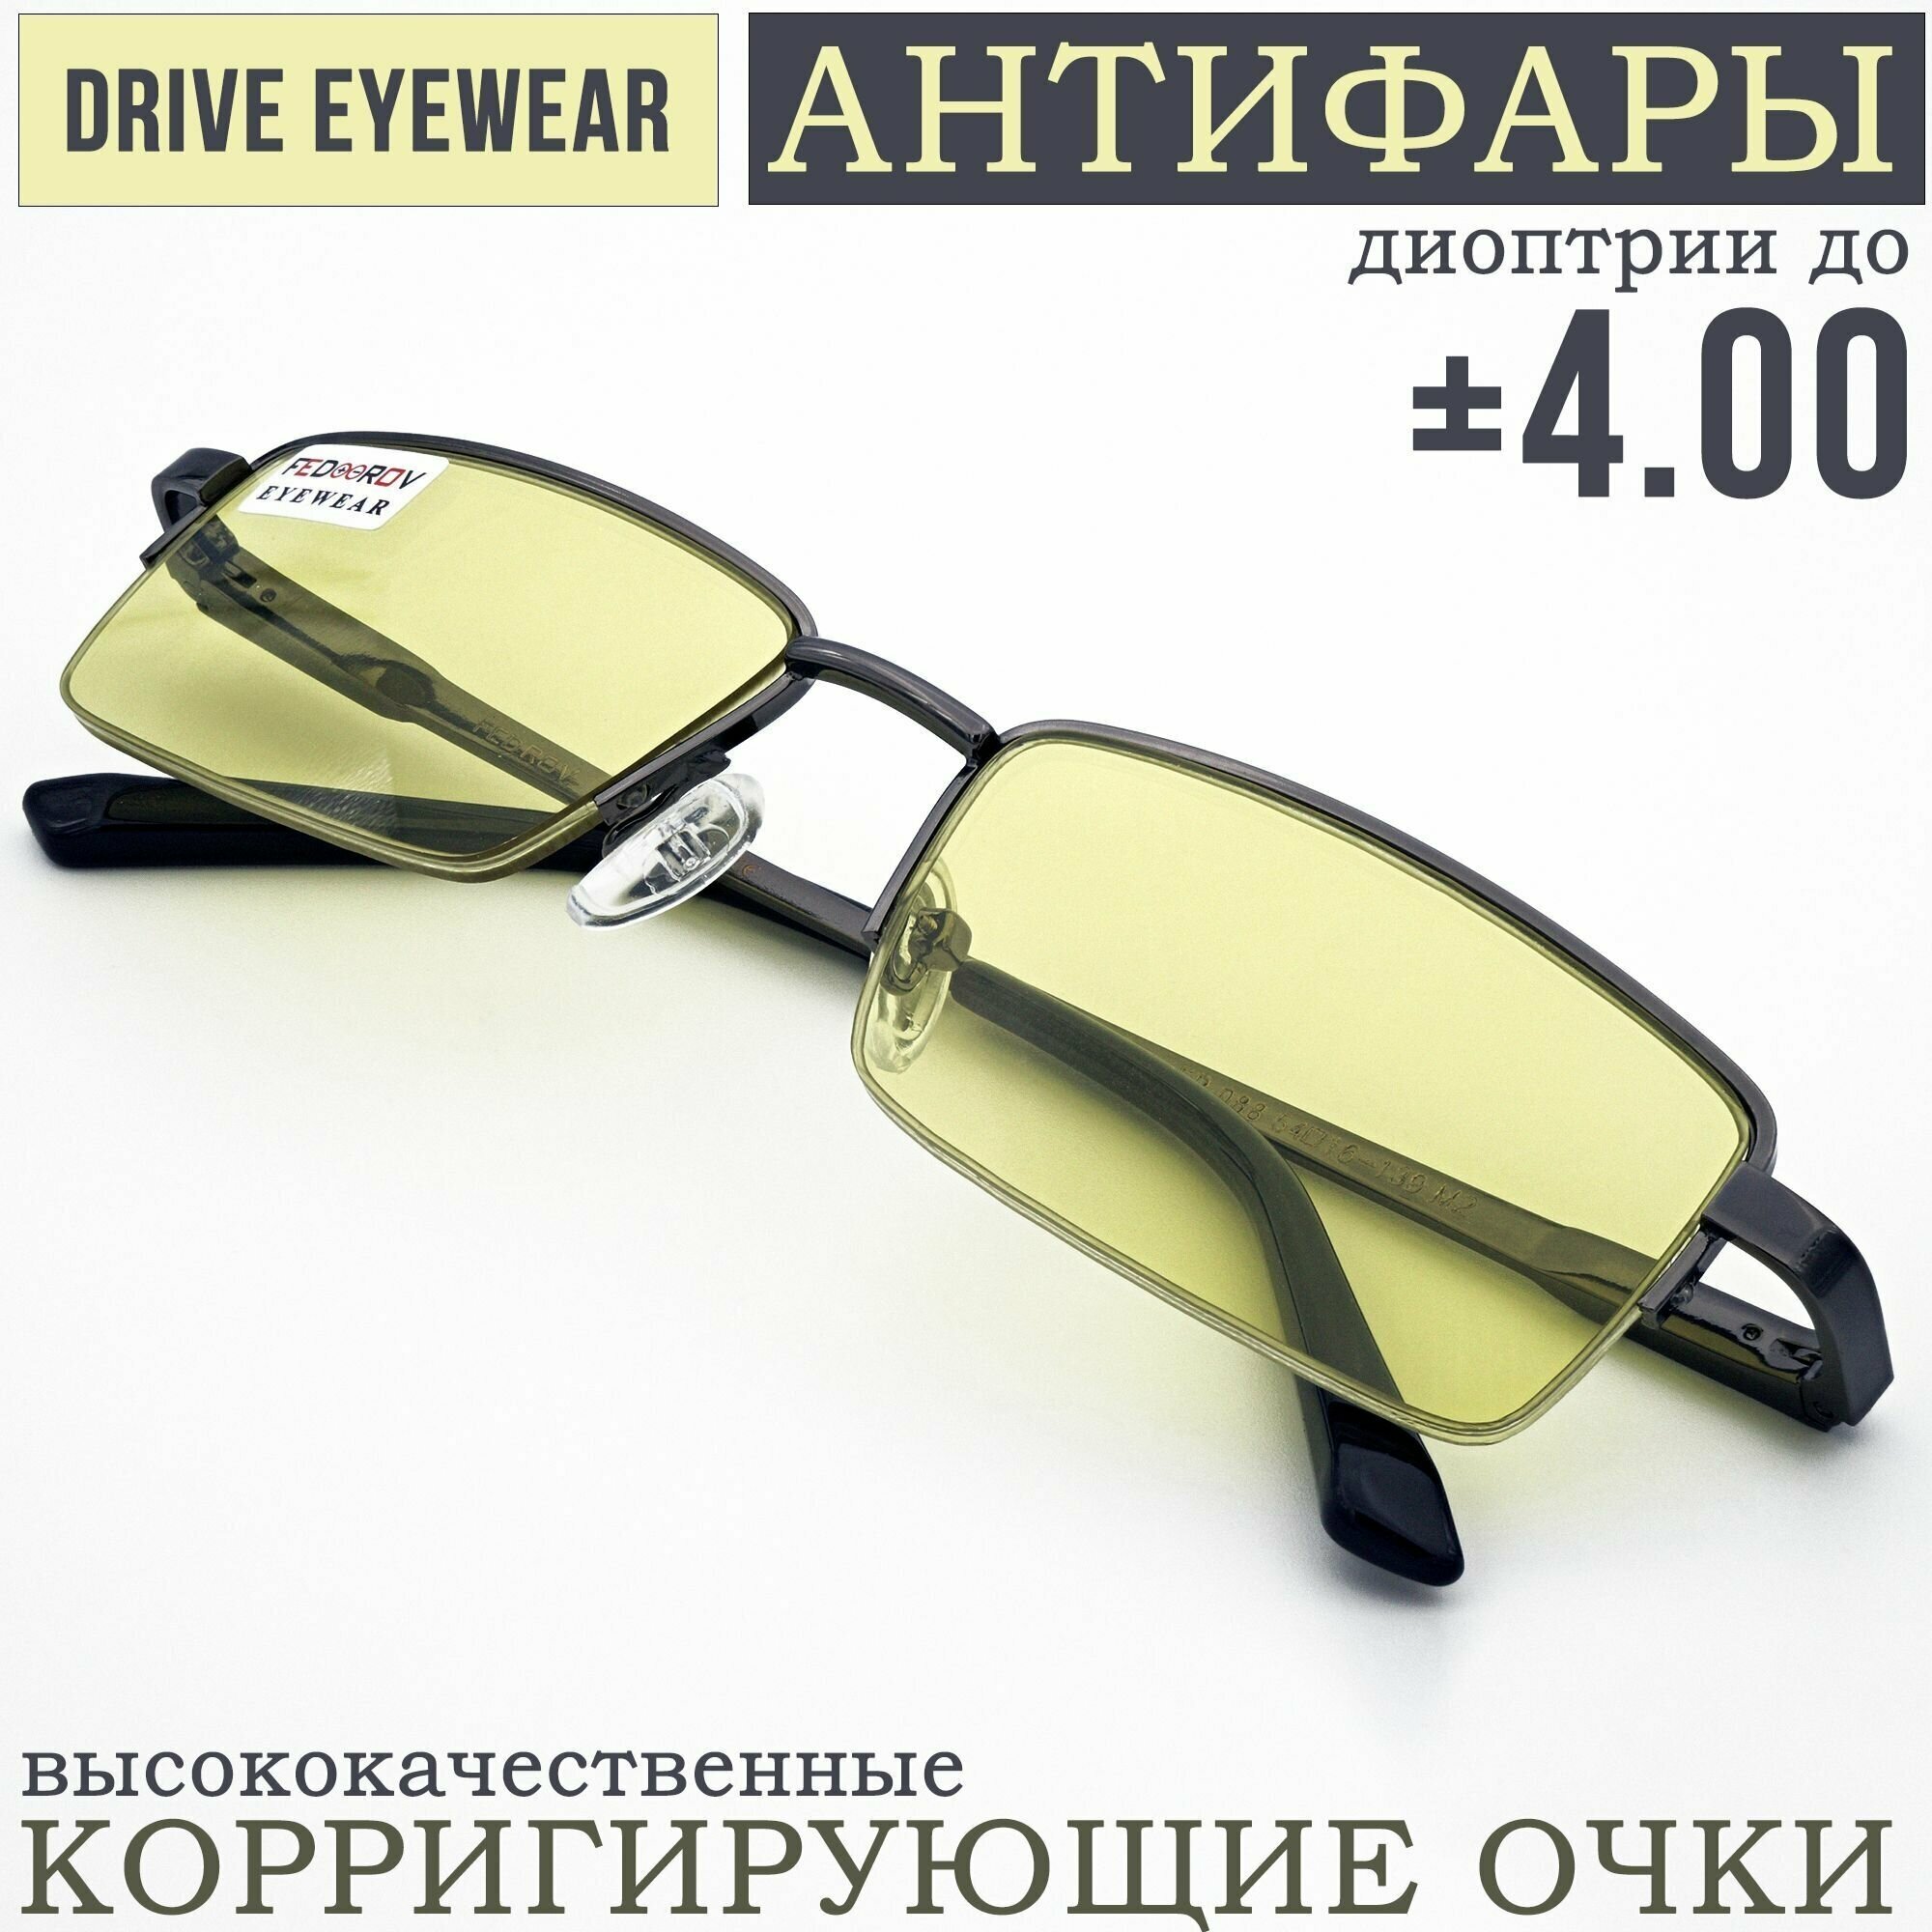 Готовые очки водительские Антифары с диоптриями +1,25